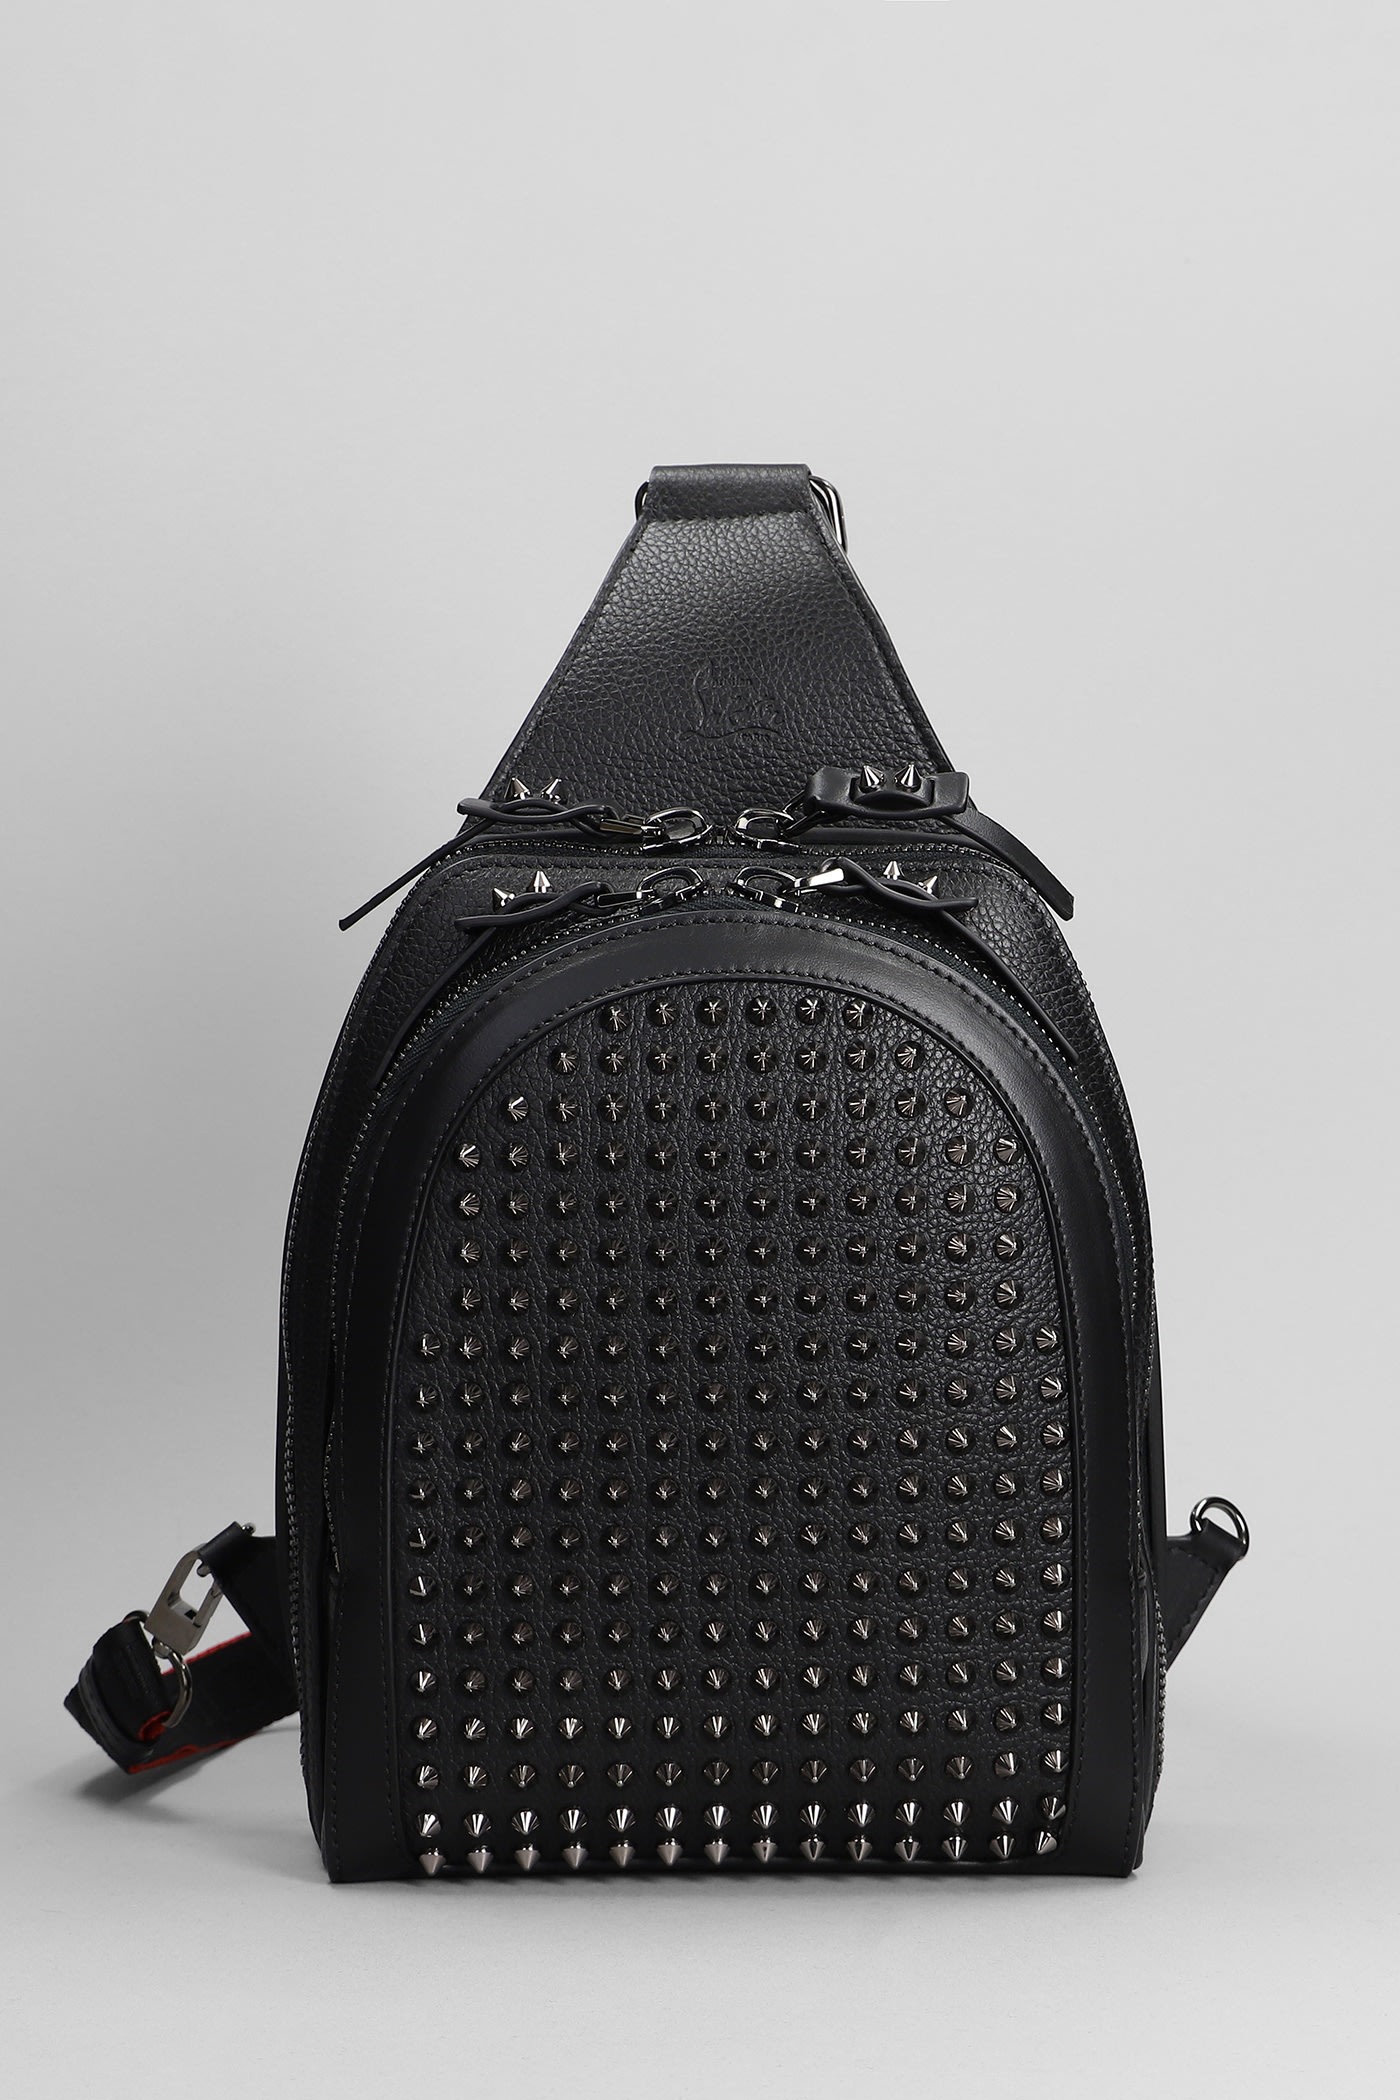 Christian Louboutin Shoulder Bag In Black Leather